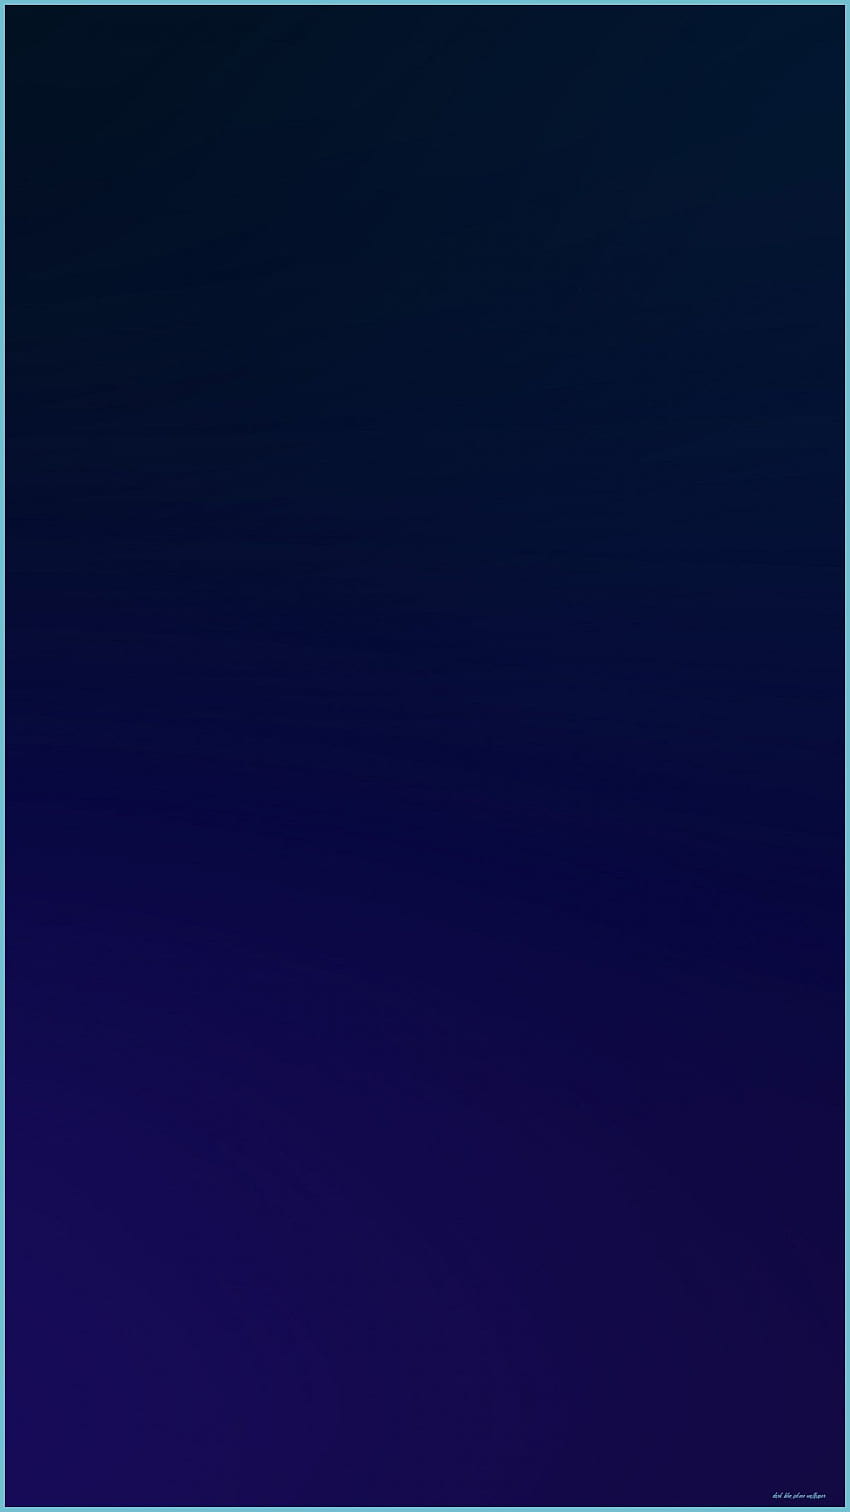 Biru Tua : Biru Tua Untuk Iphone 10, iphone biru navy solid wallpaper ponsel HD